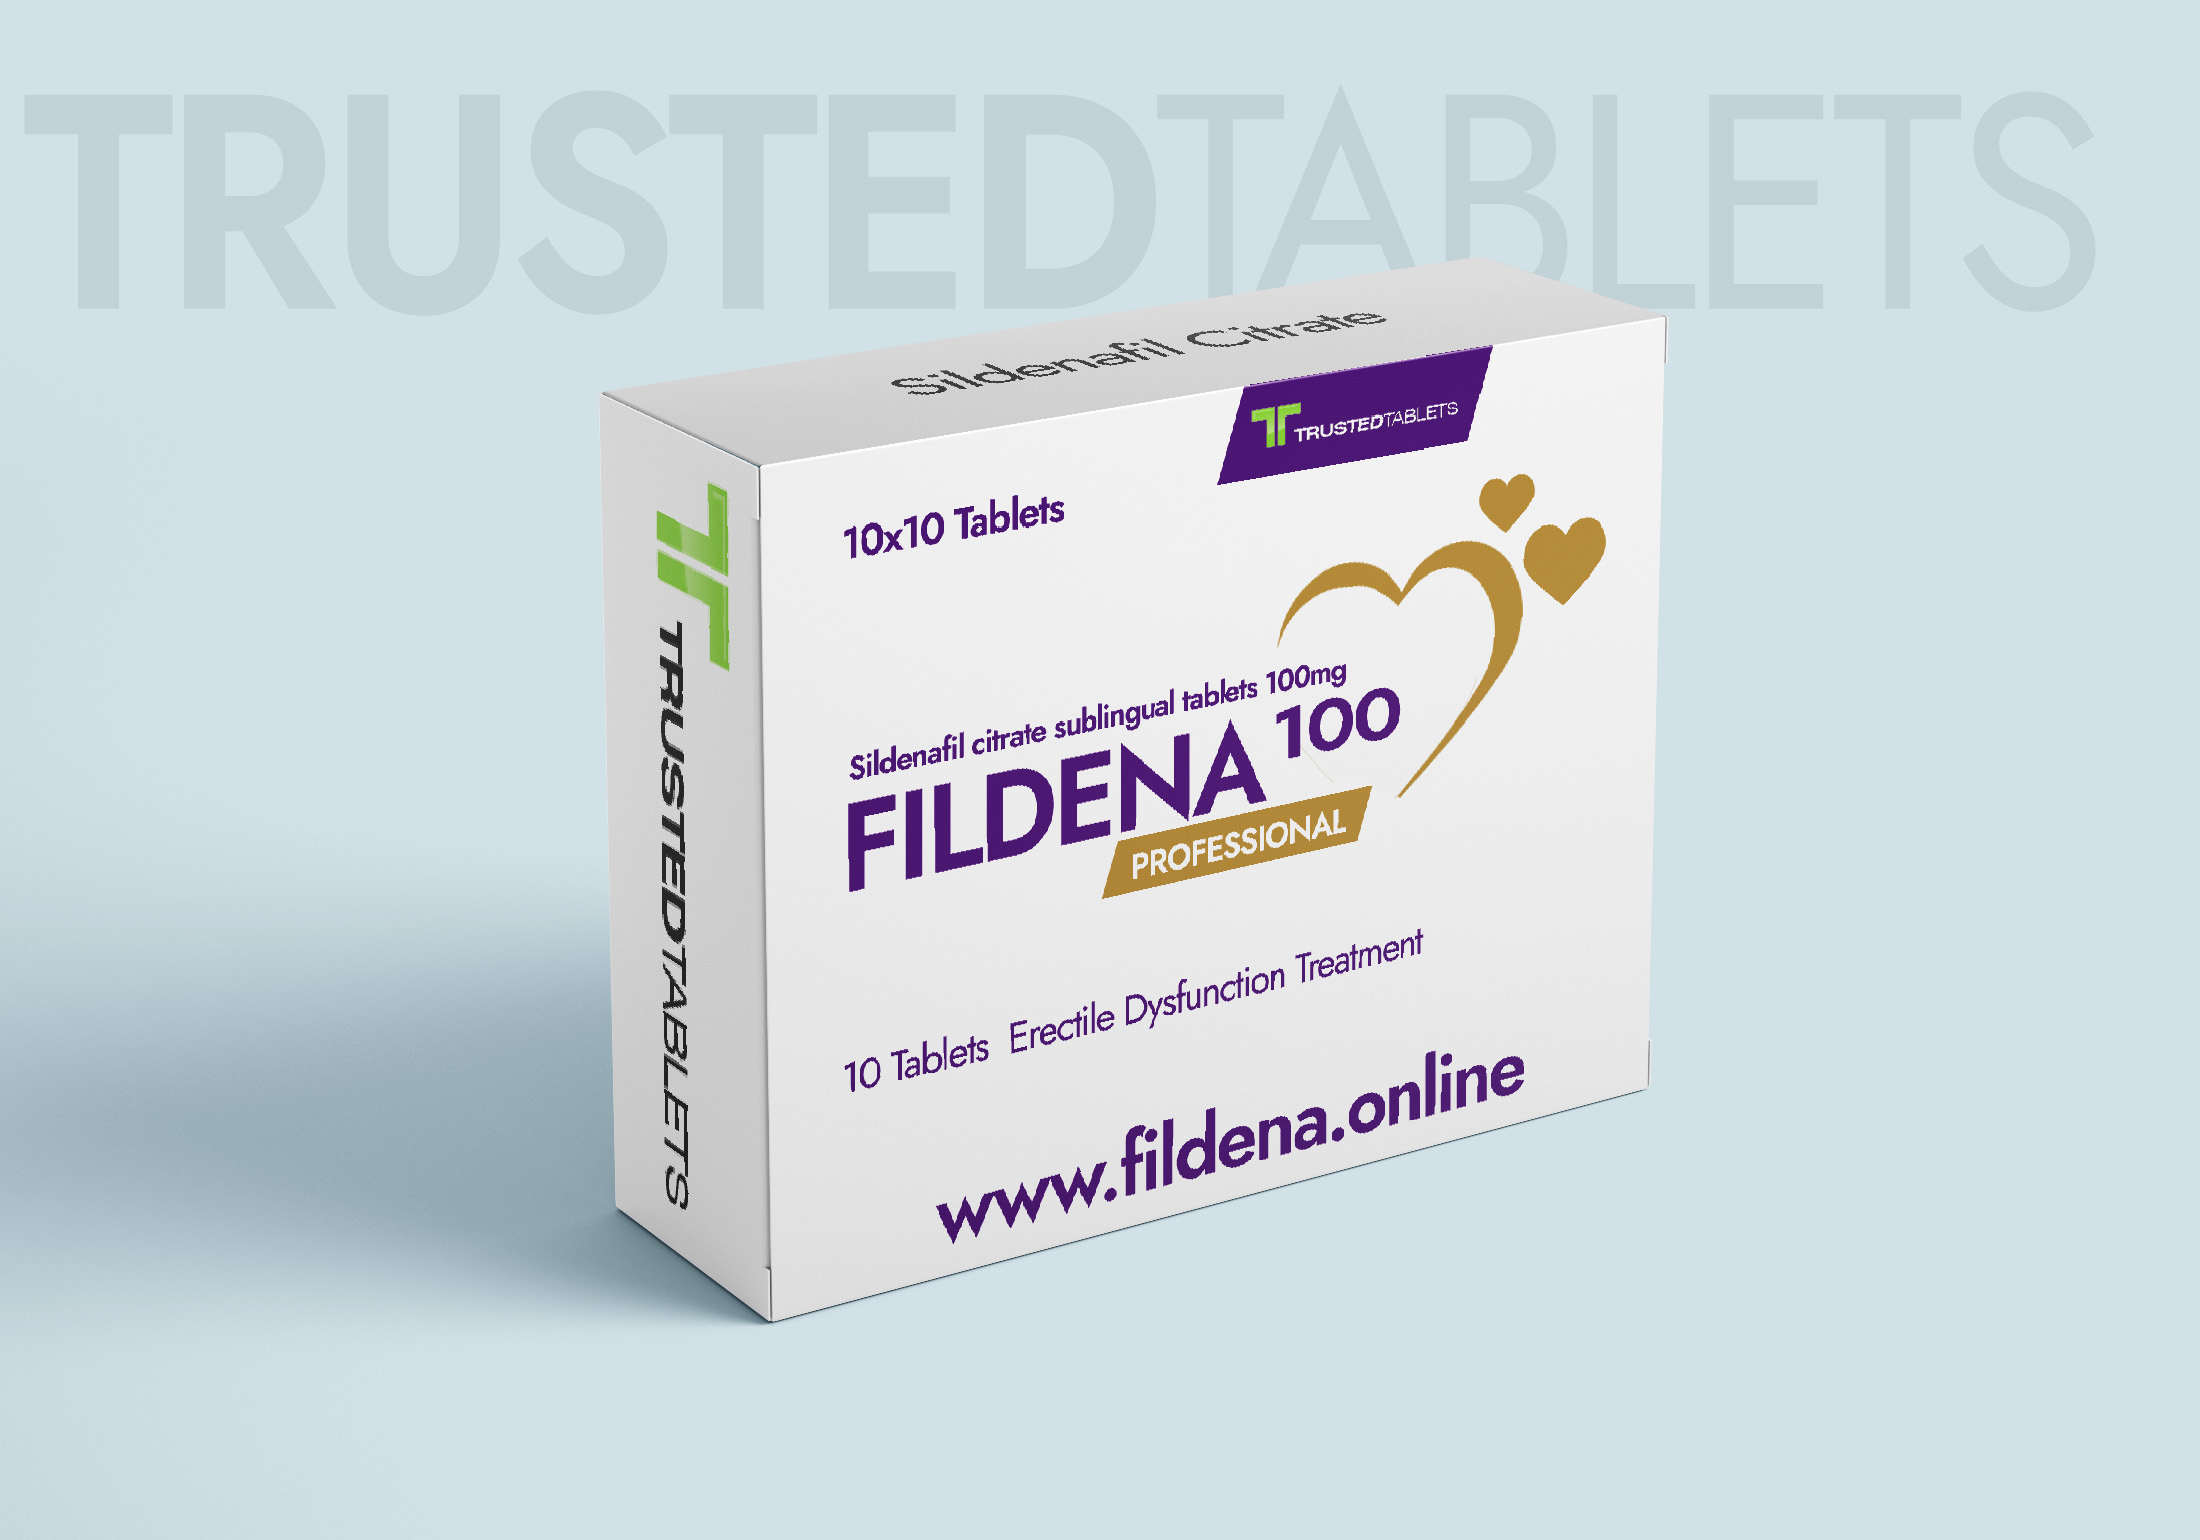 Fildena Professional TrustedTablets